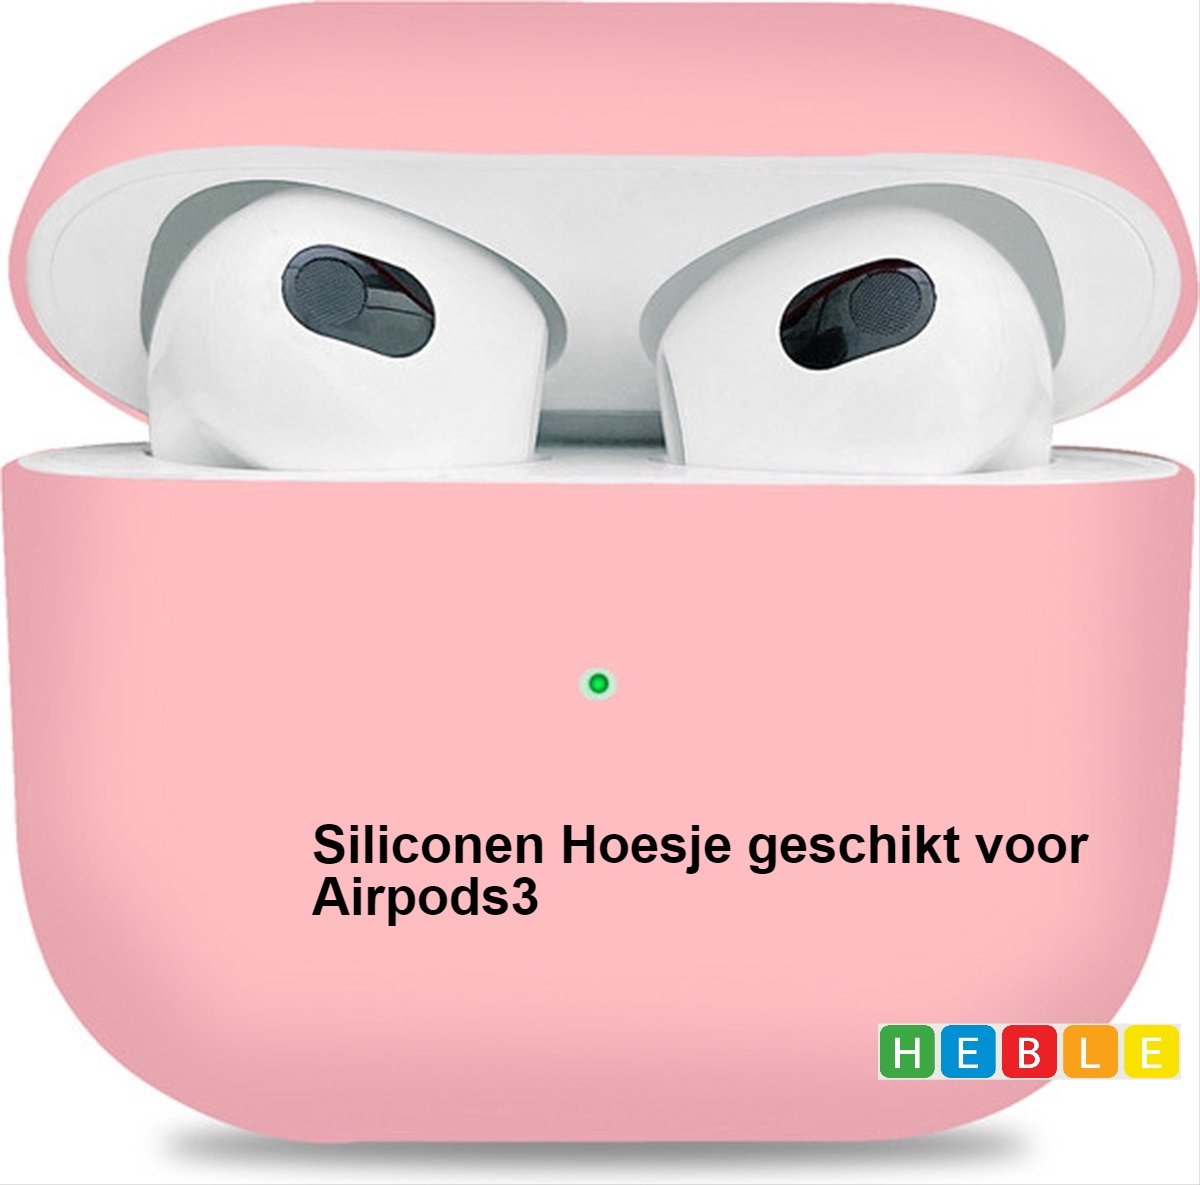 Siliconen hoesje - Geschikt voor Apple AirPods 3 Hoesje in het Roze - van Heble®